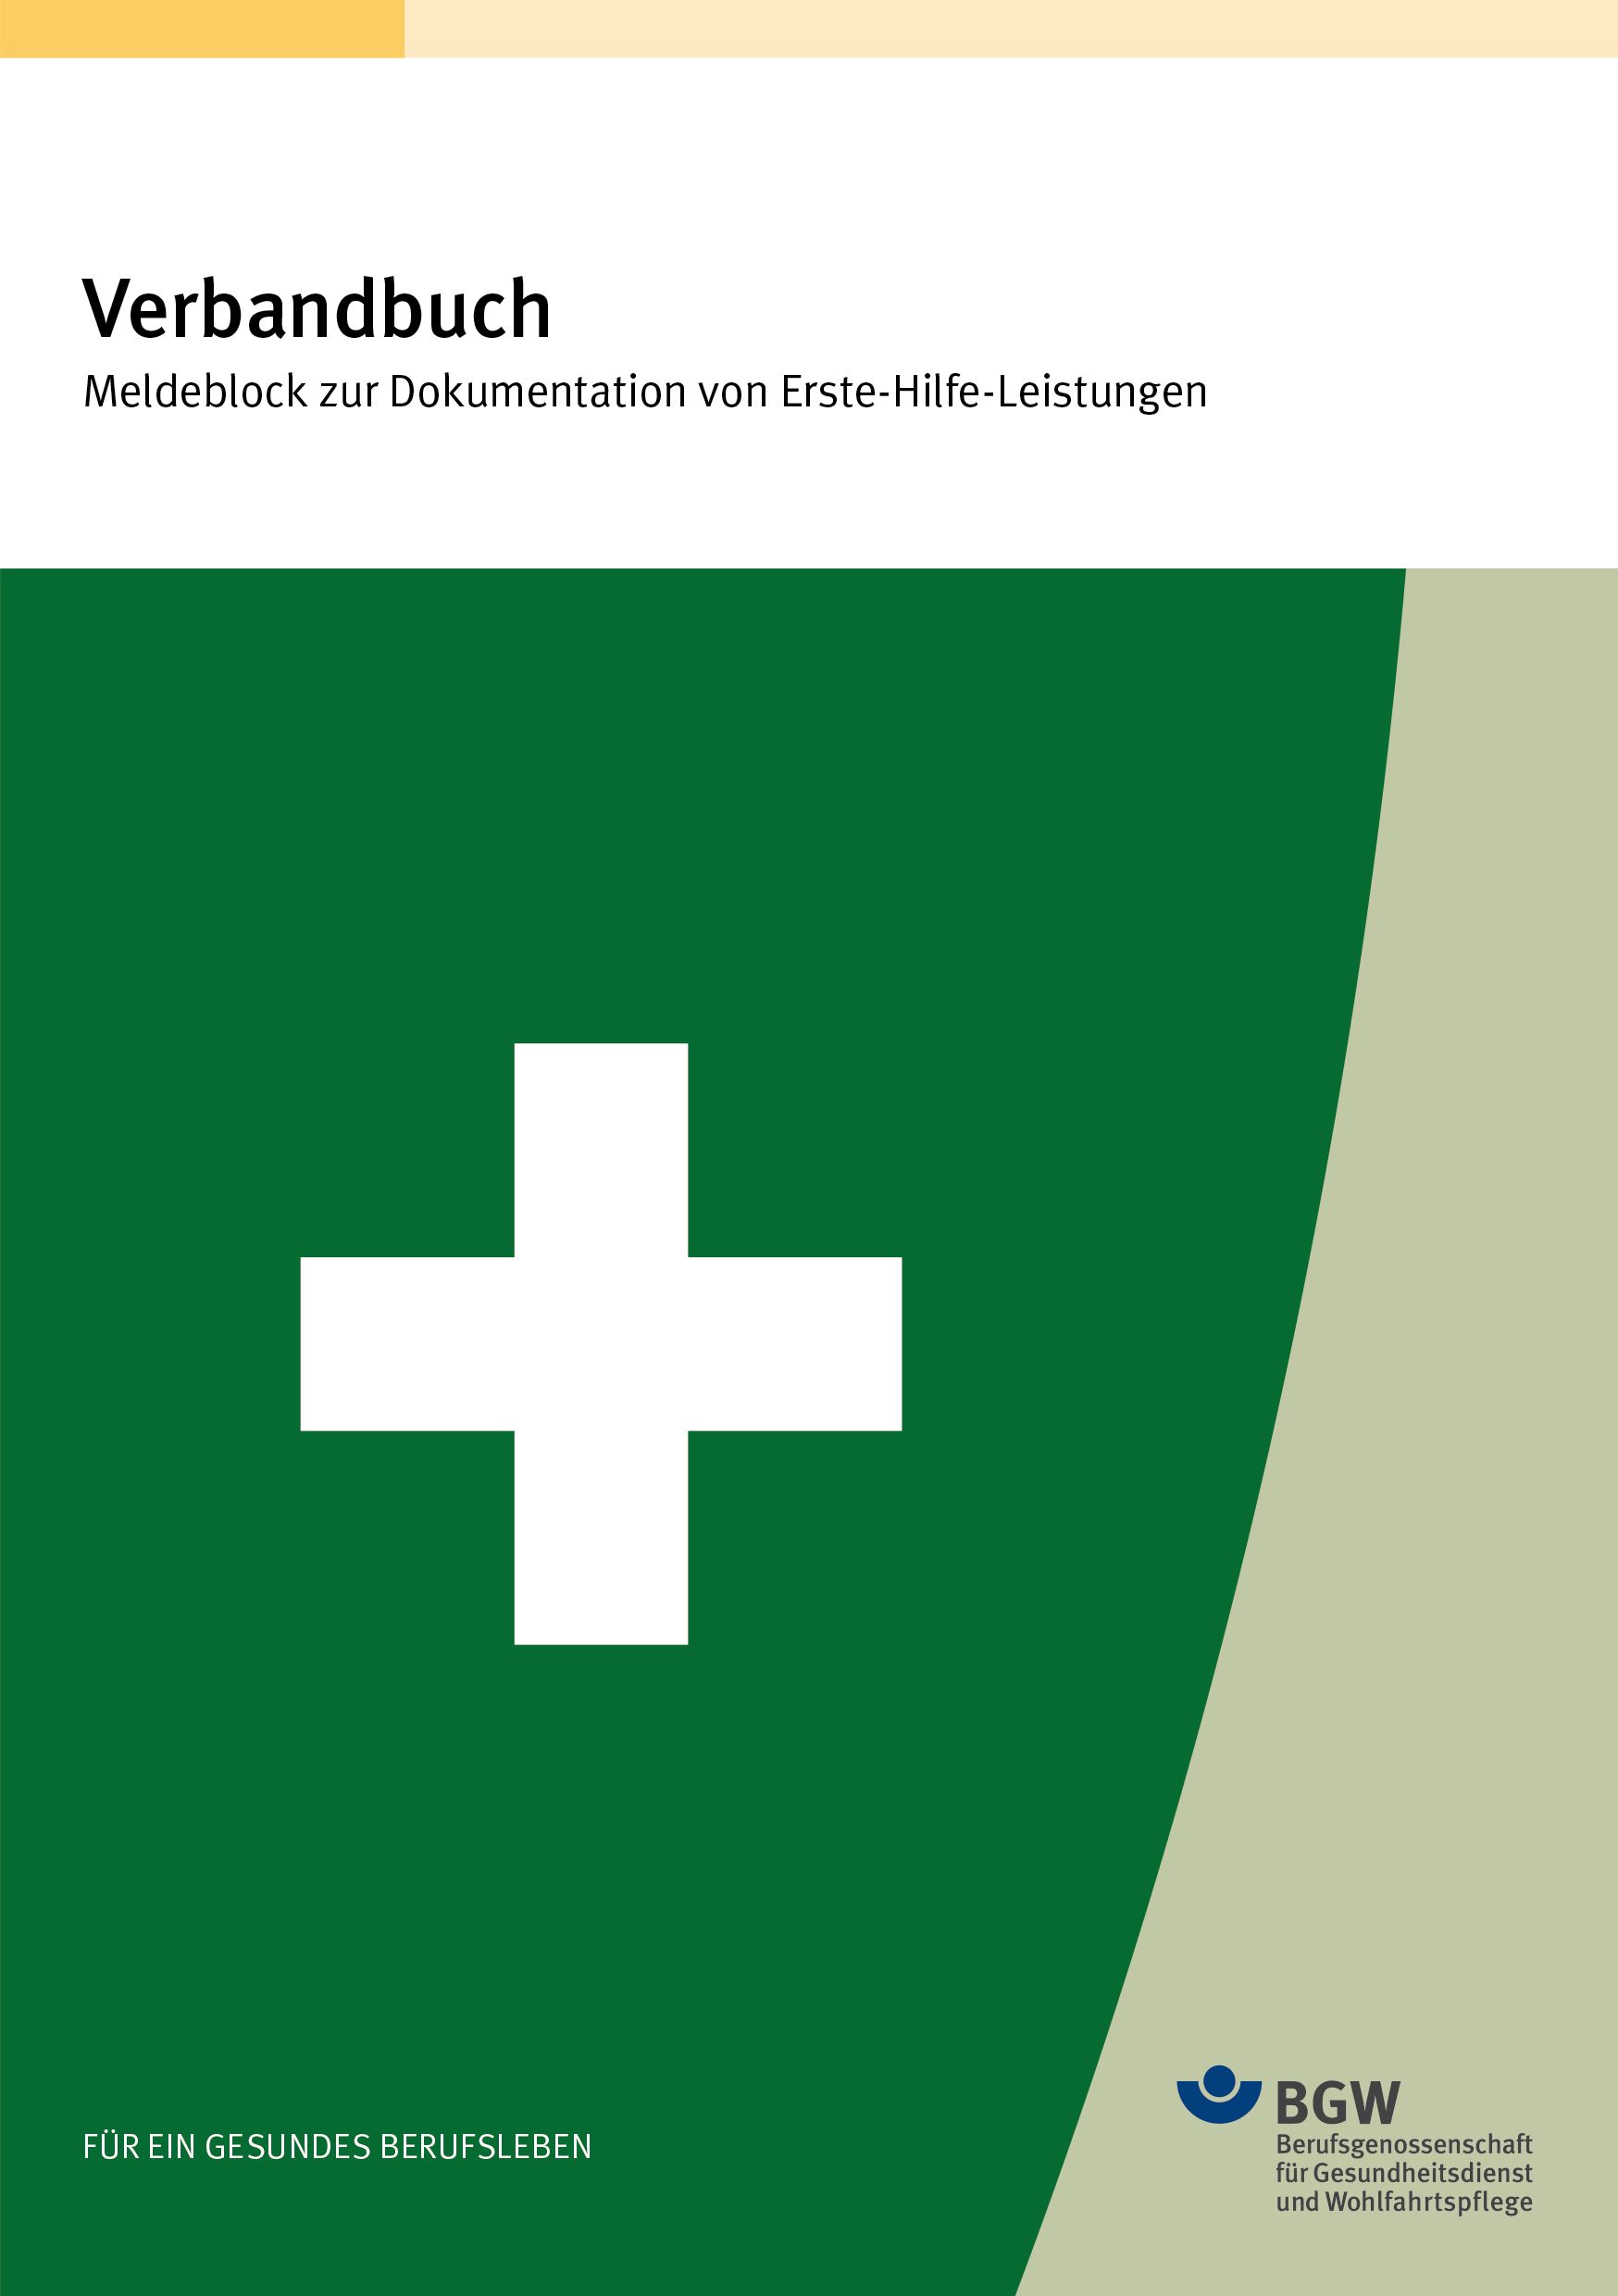 Titel: Verbandbuch - weißes Kreuz auf grünem Hintergrund